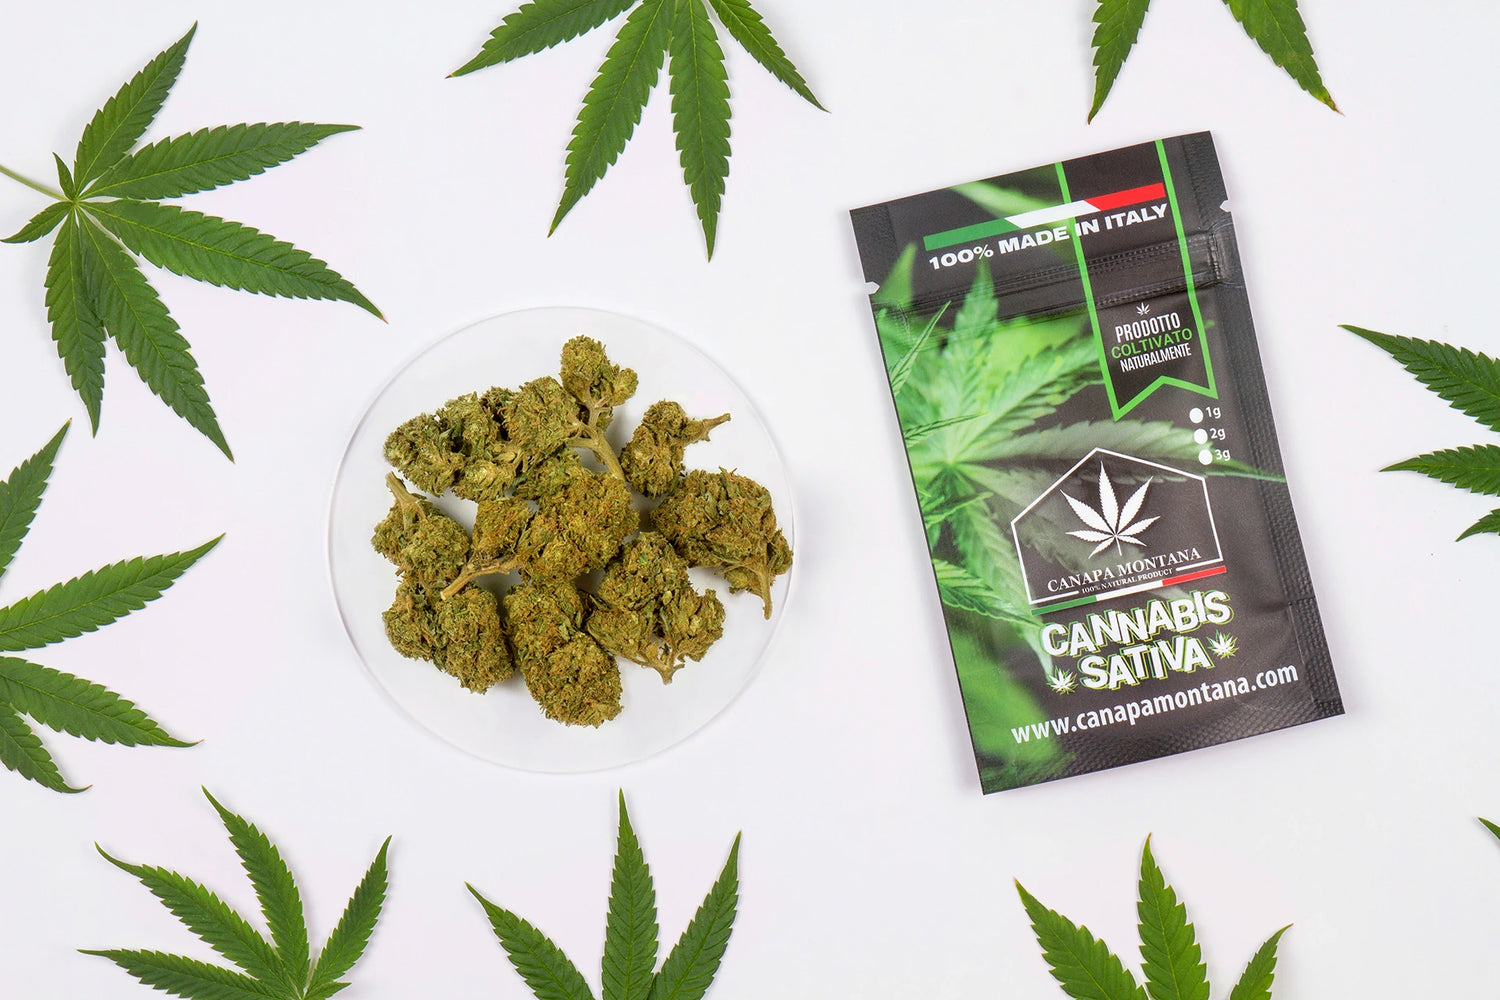 Cannabis light coltivata in Italia ad alto CBD-Canapa Montana – Page 3